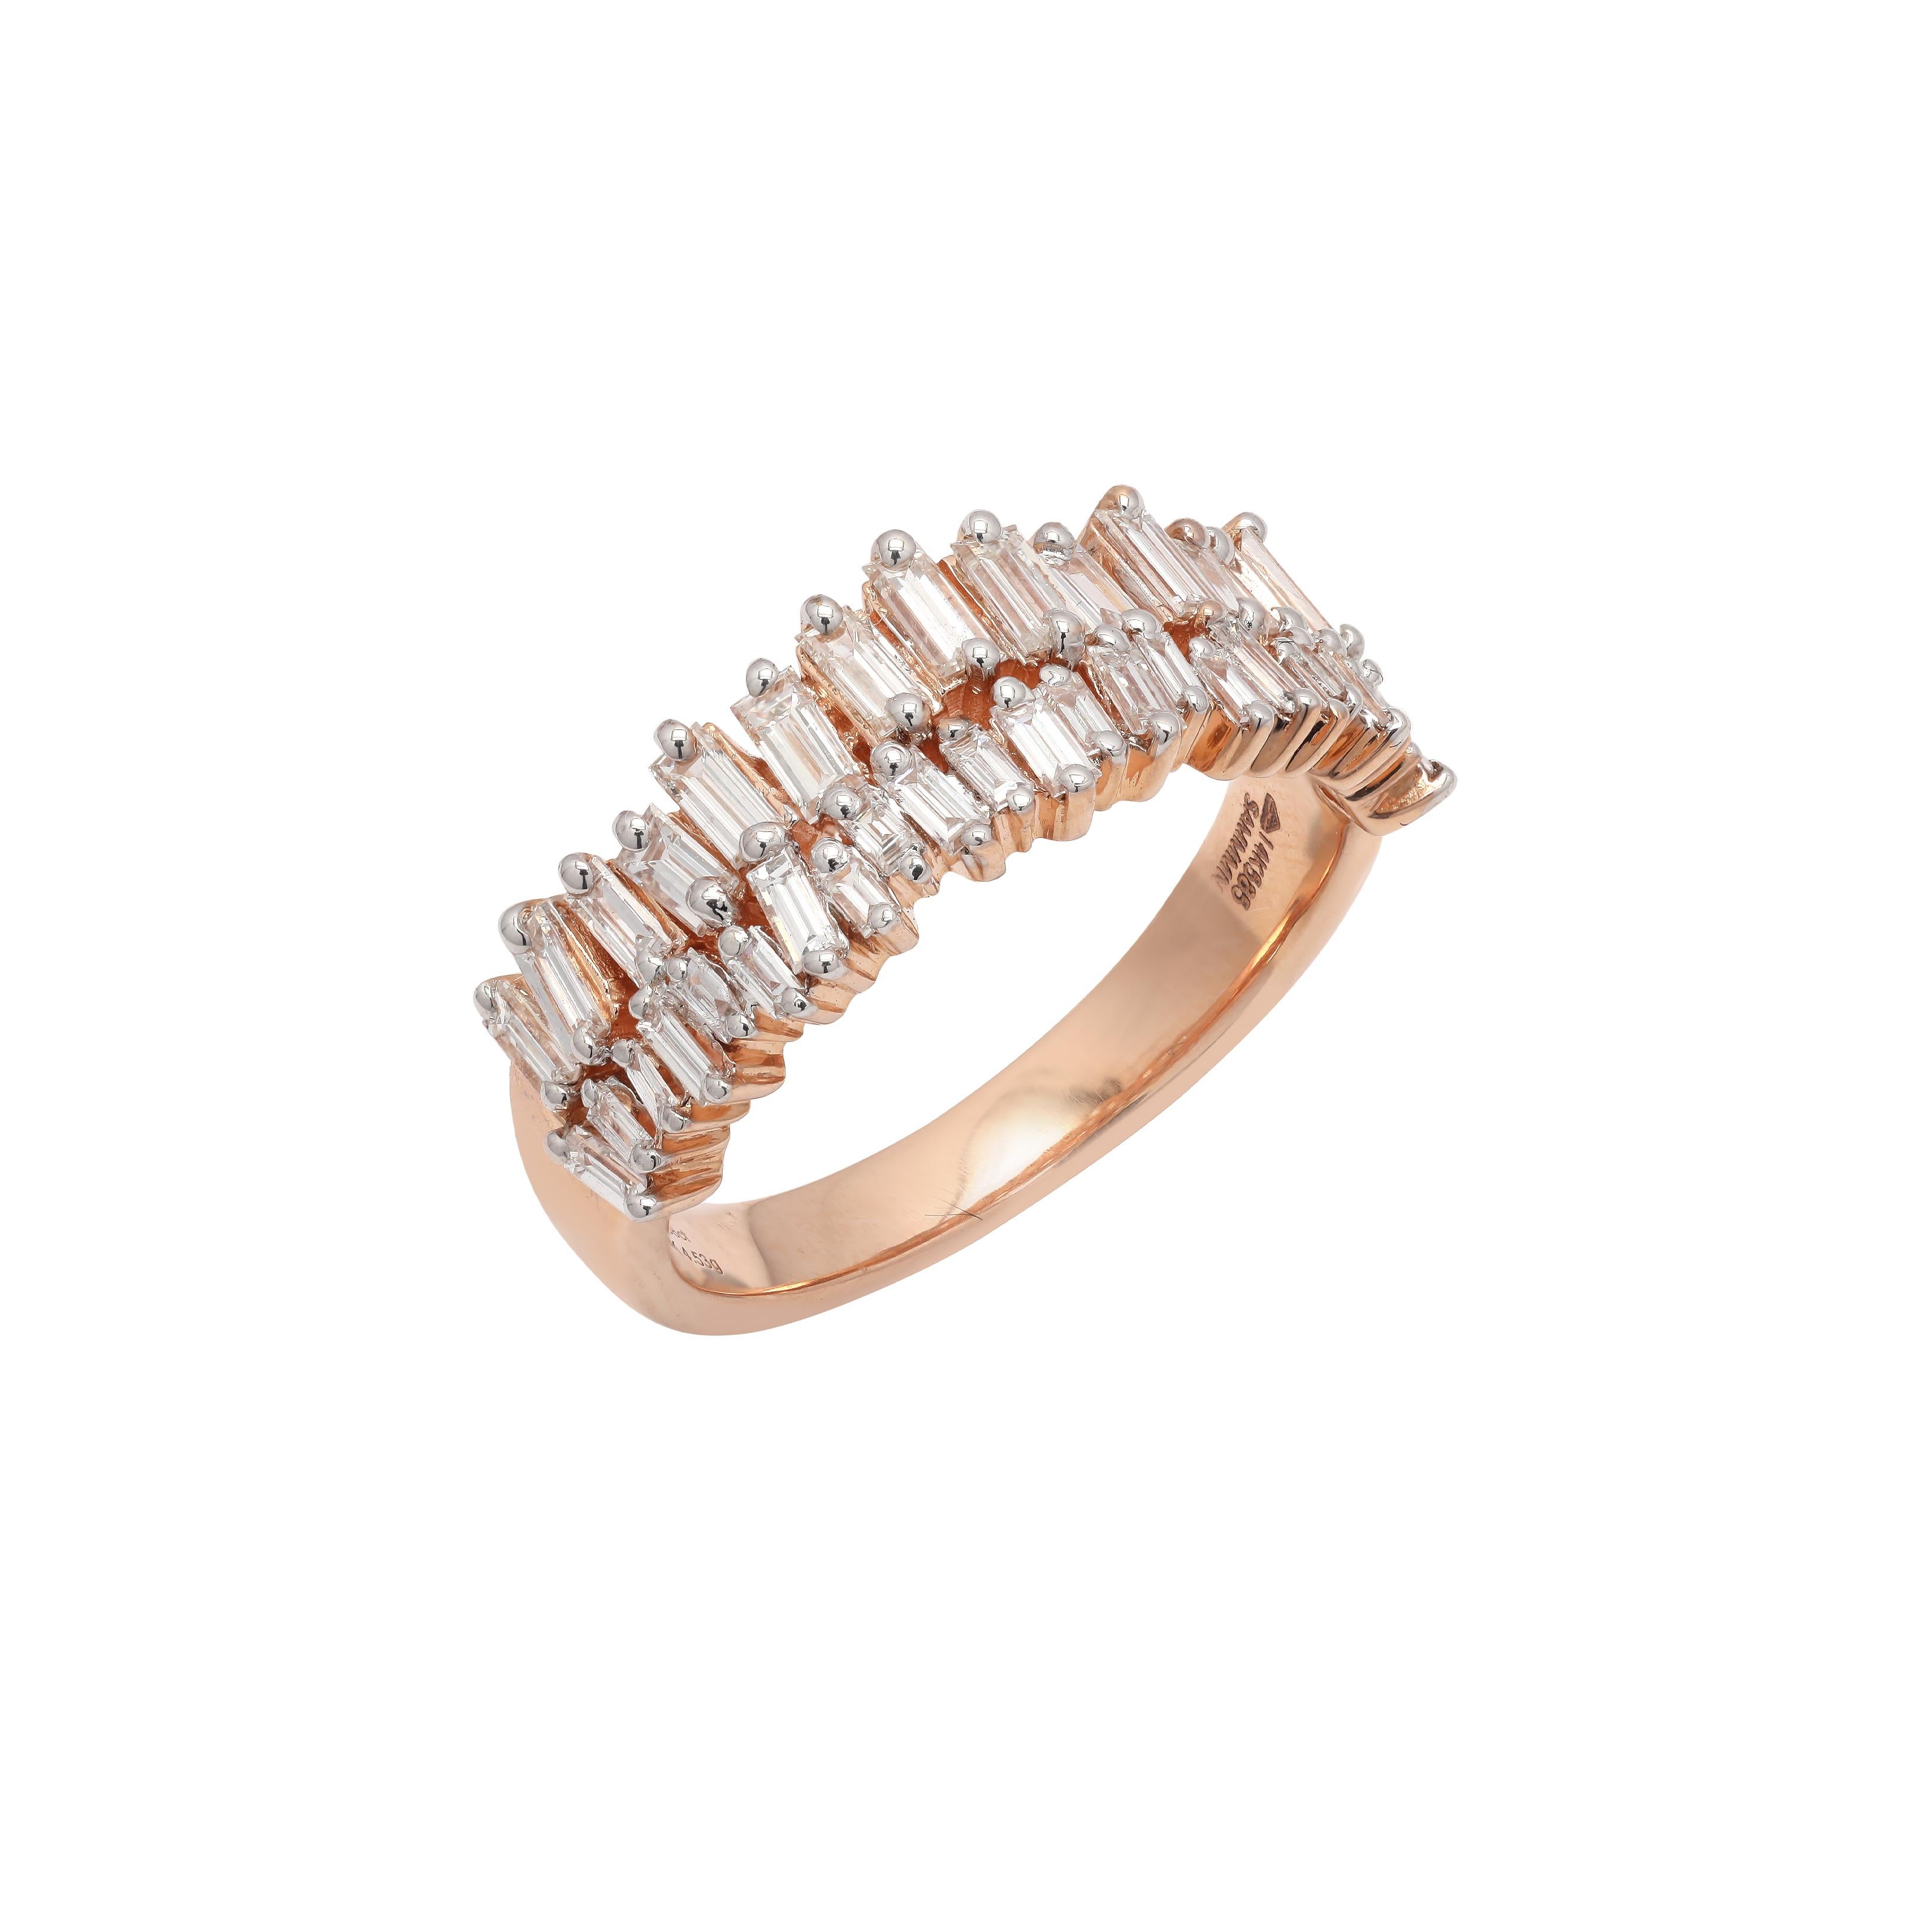 For Sale:  1 Carat Diamond Engagement Band Ring in 14 Karat Rose Gold 2